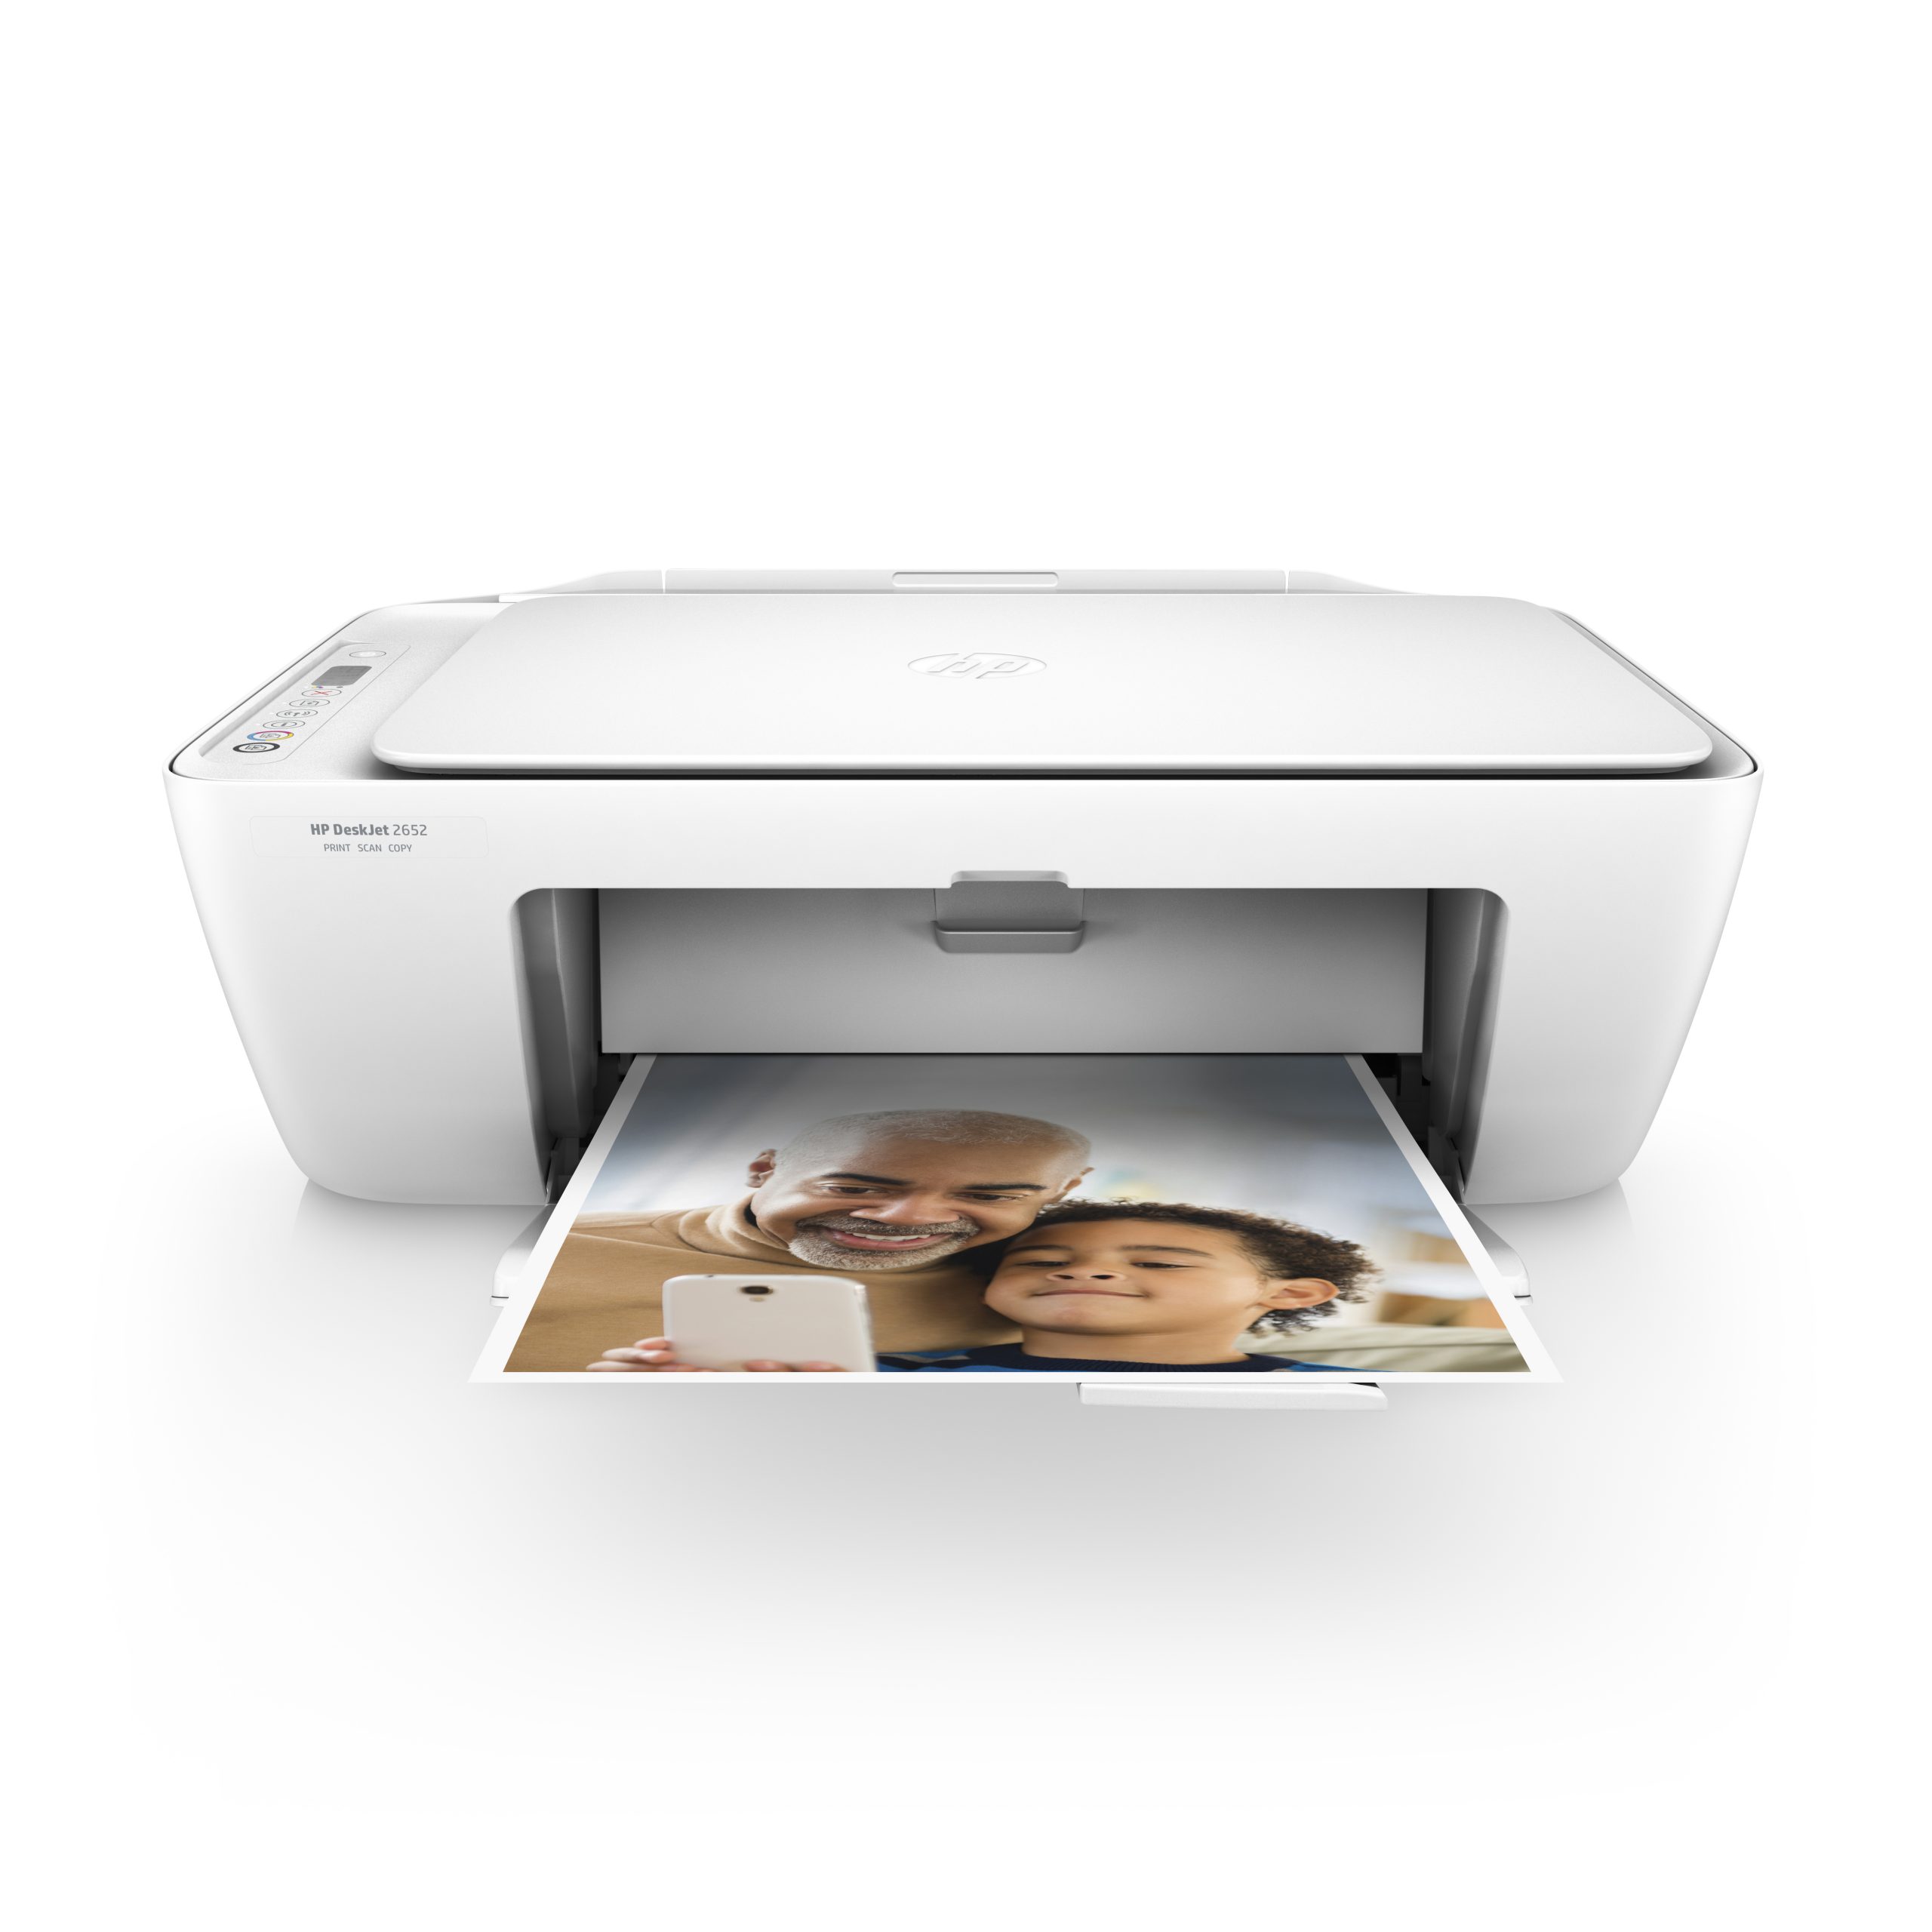 Náplně do tiskárny HP DeskJet 2652